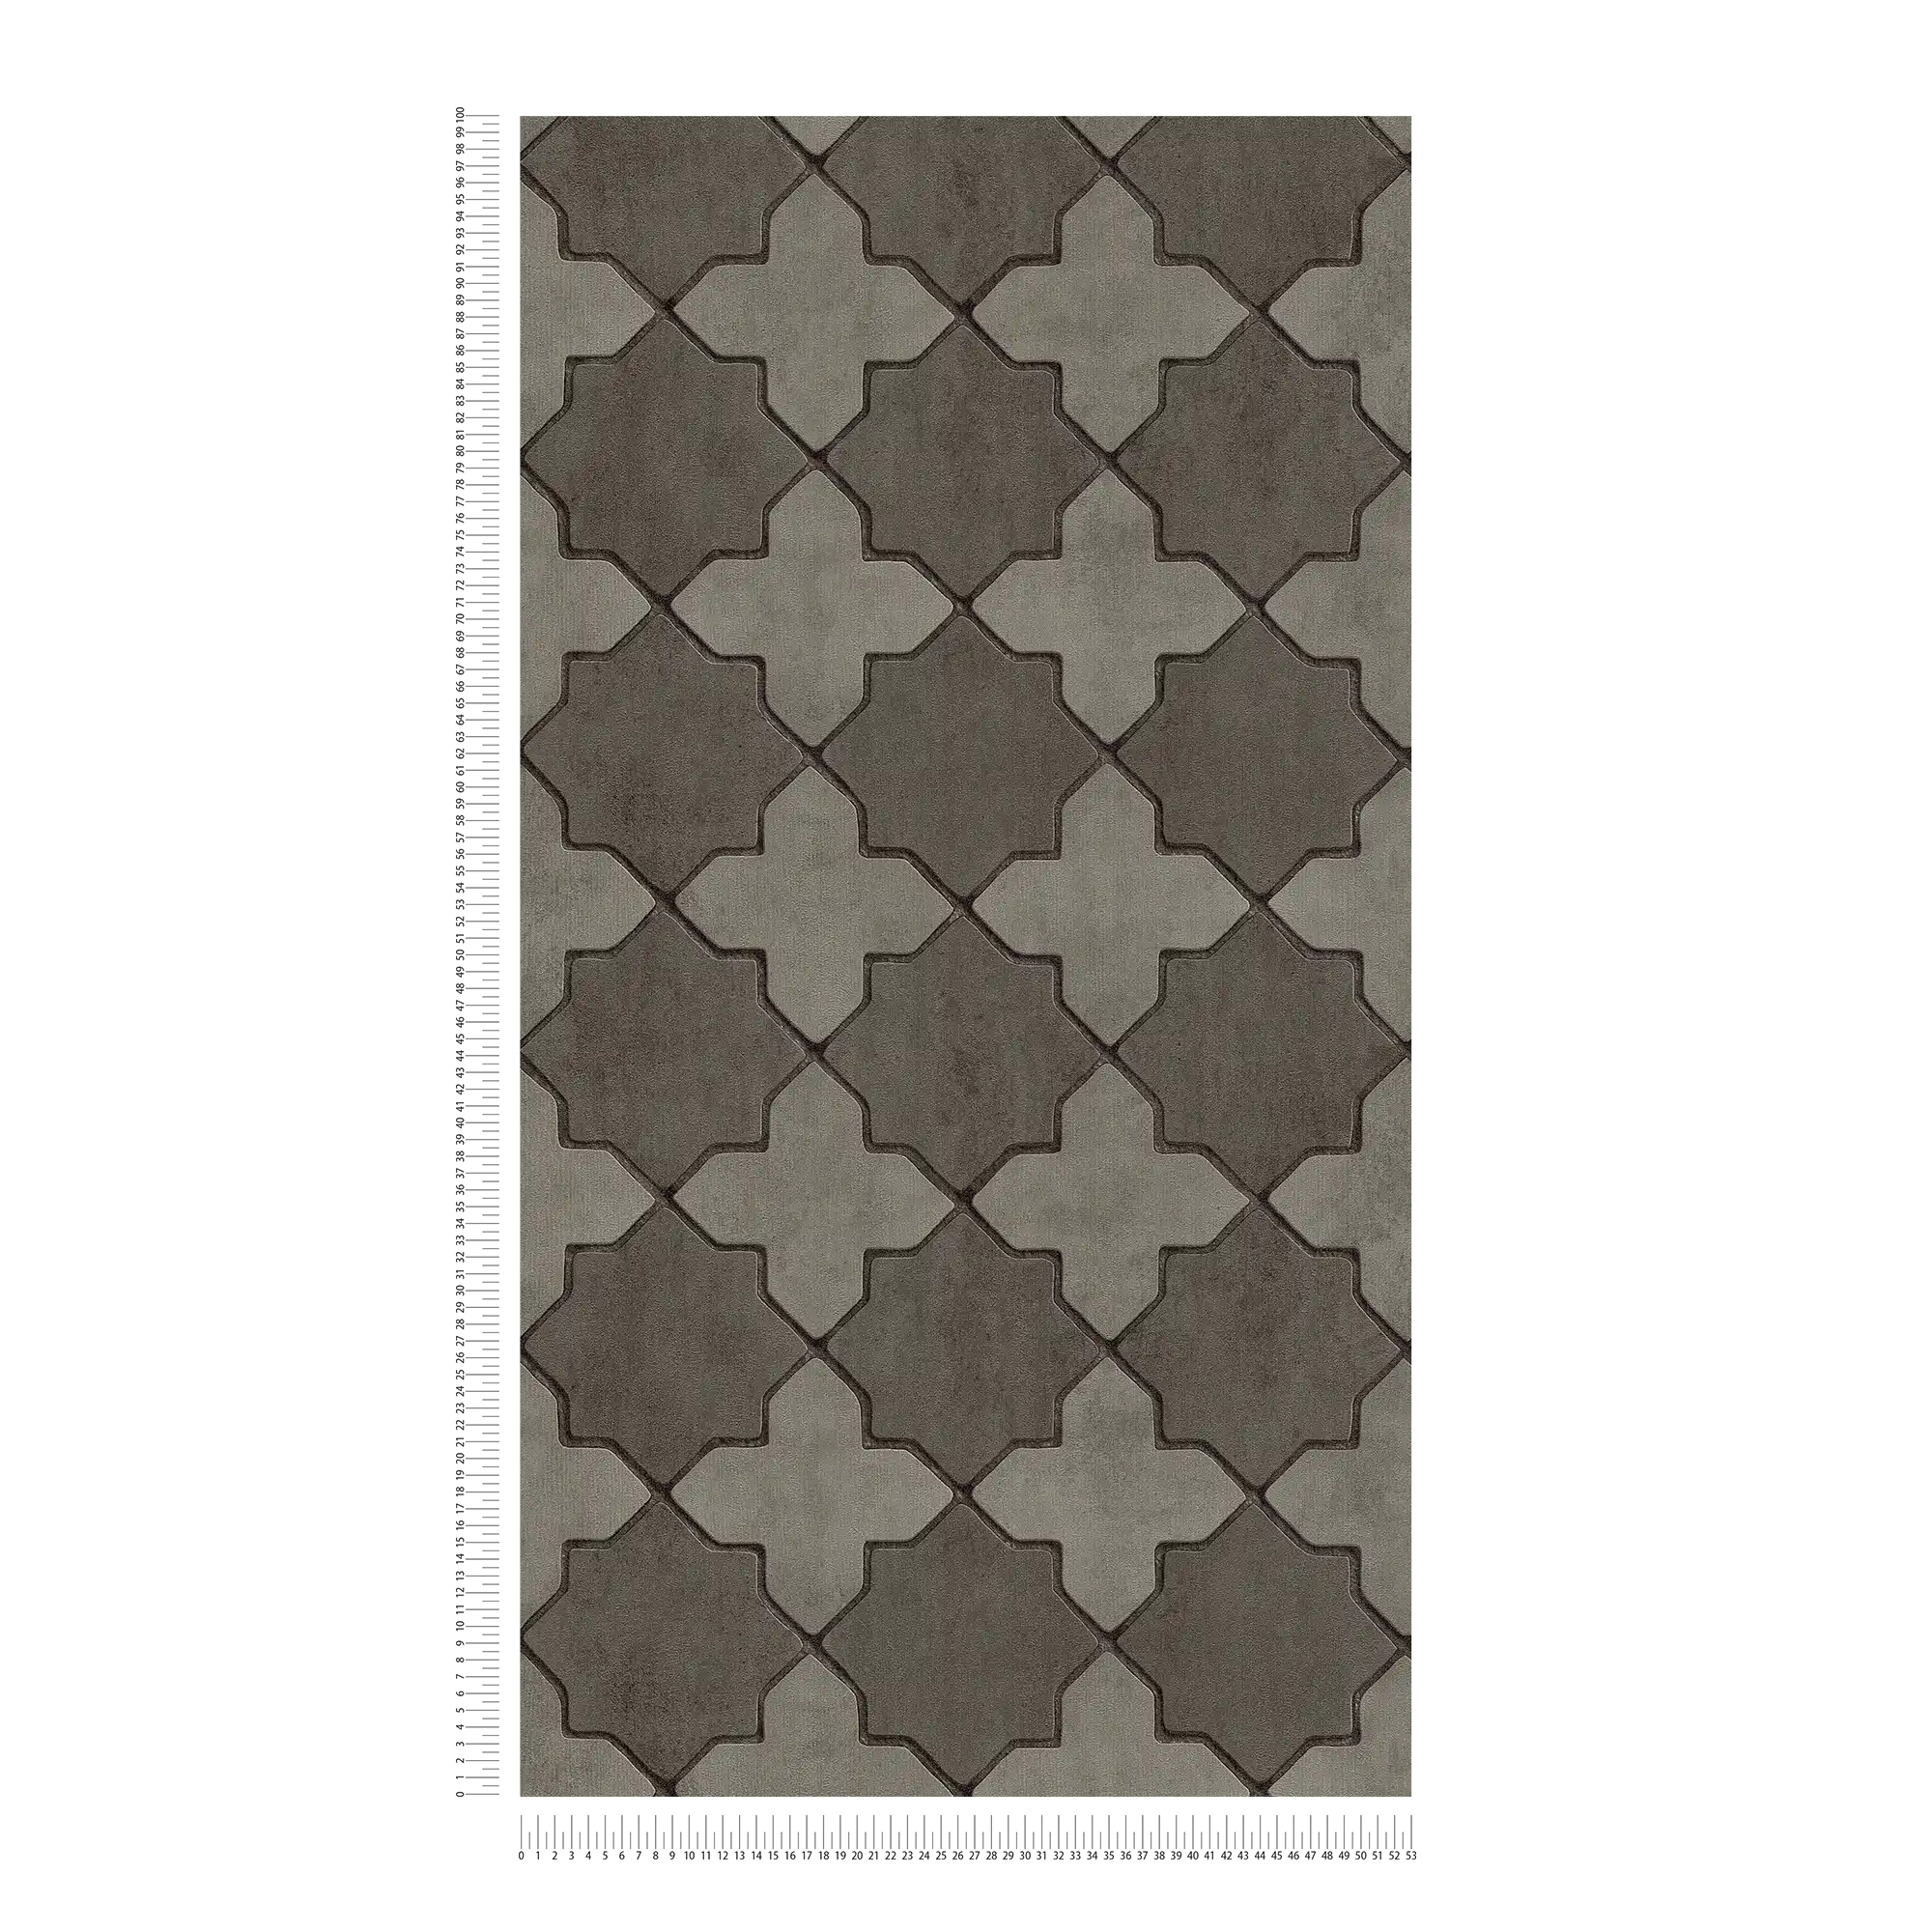             Papel pintado con aspecto de mosaico - gris, negro
        